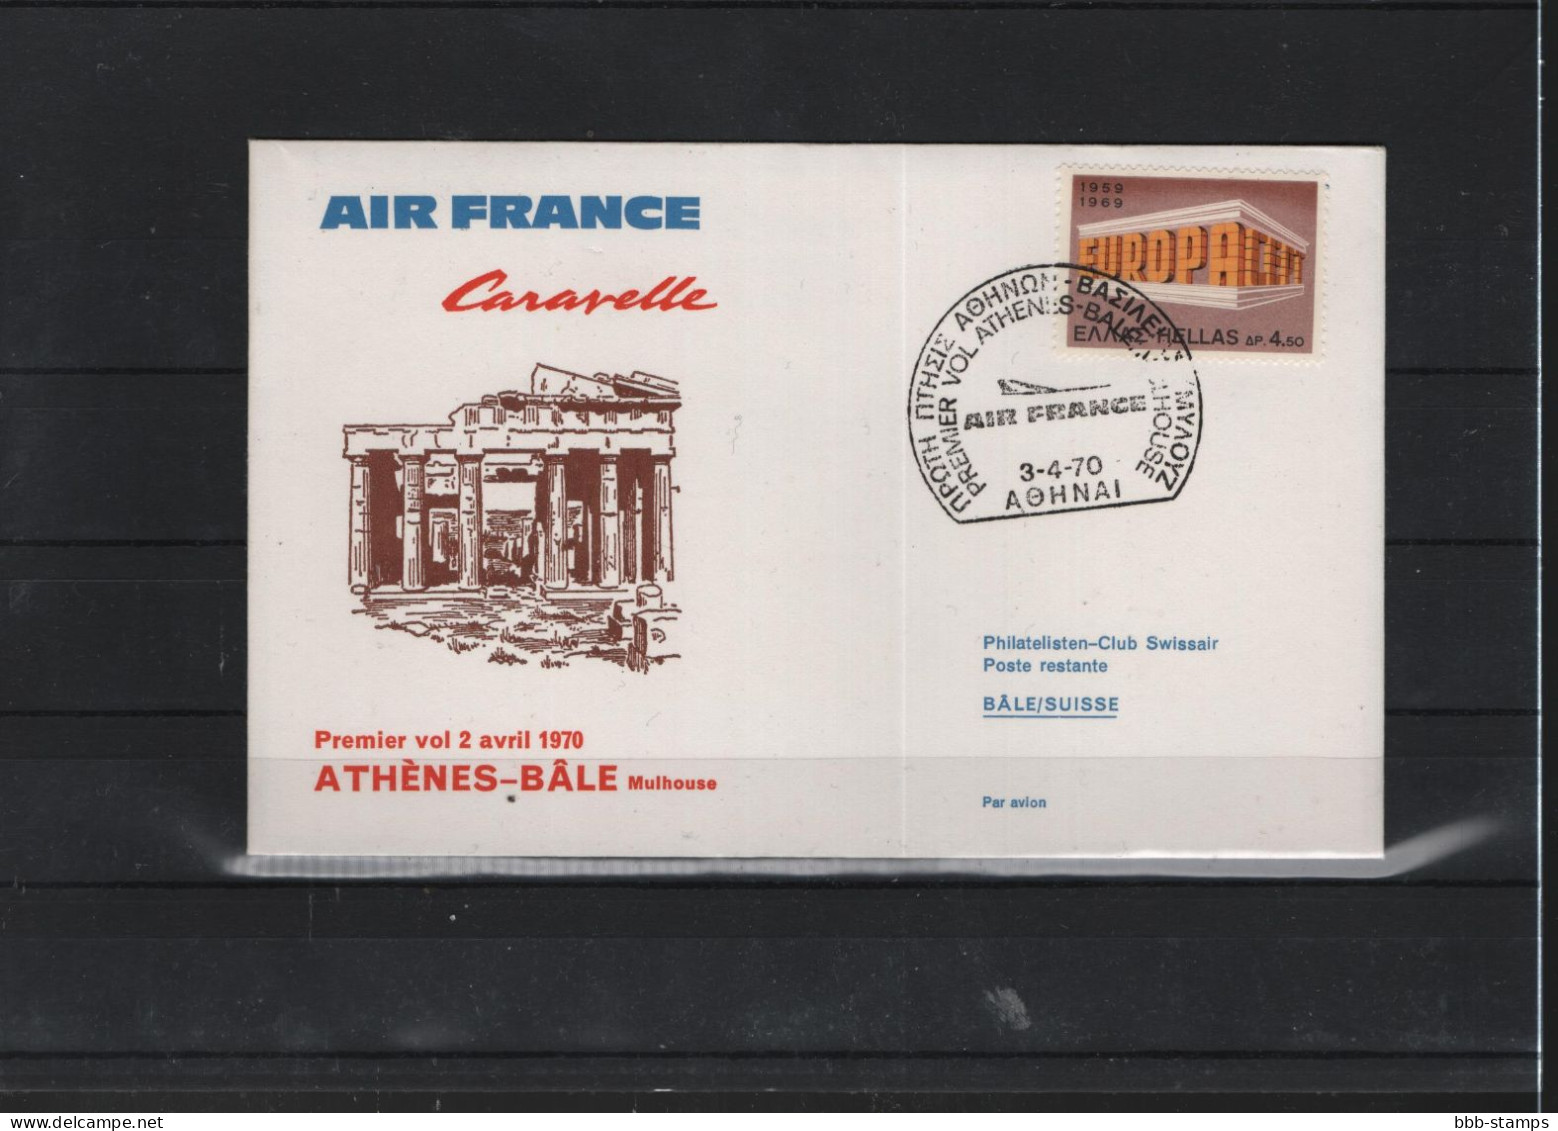 Schweiz Luftpost FFC  Air France 2.4.1970 Athen - Basel - First Flight Covers